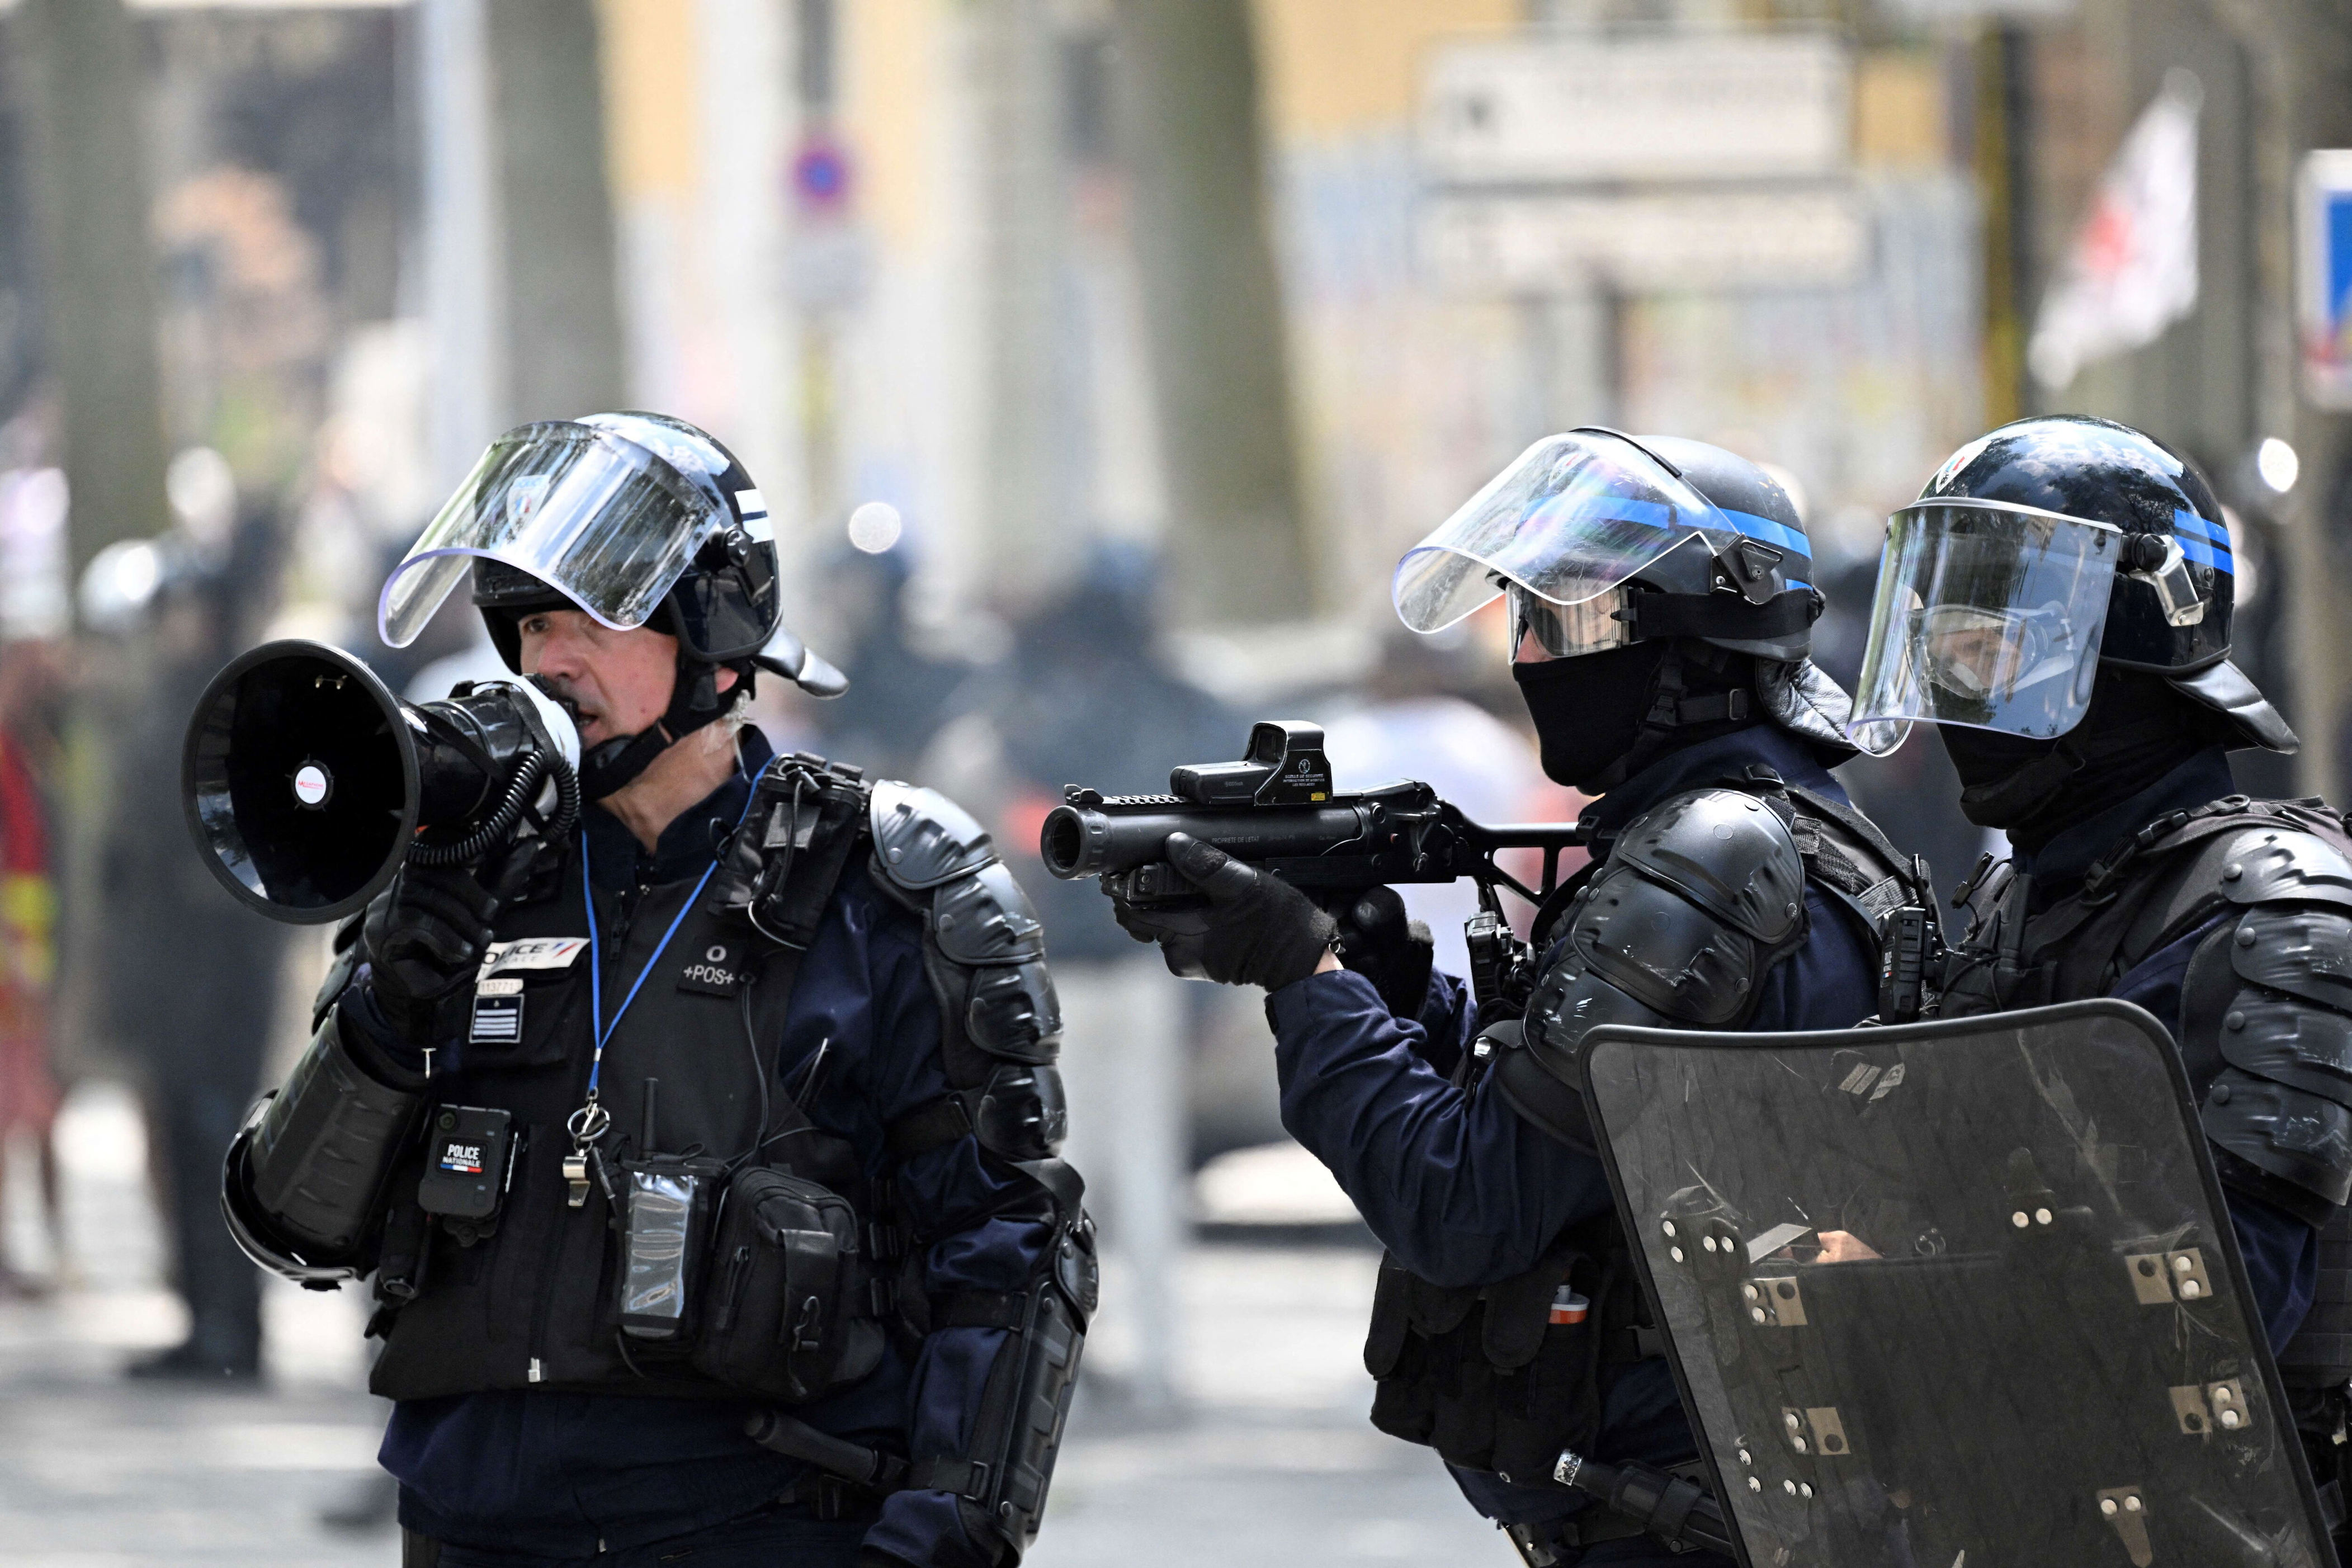 policiers et gendarmes ont peu confiance dans les citoyens et privilégient leur mission à la loi